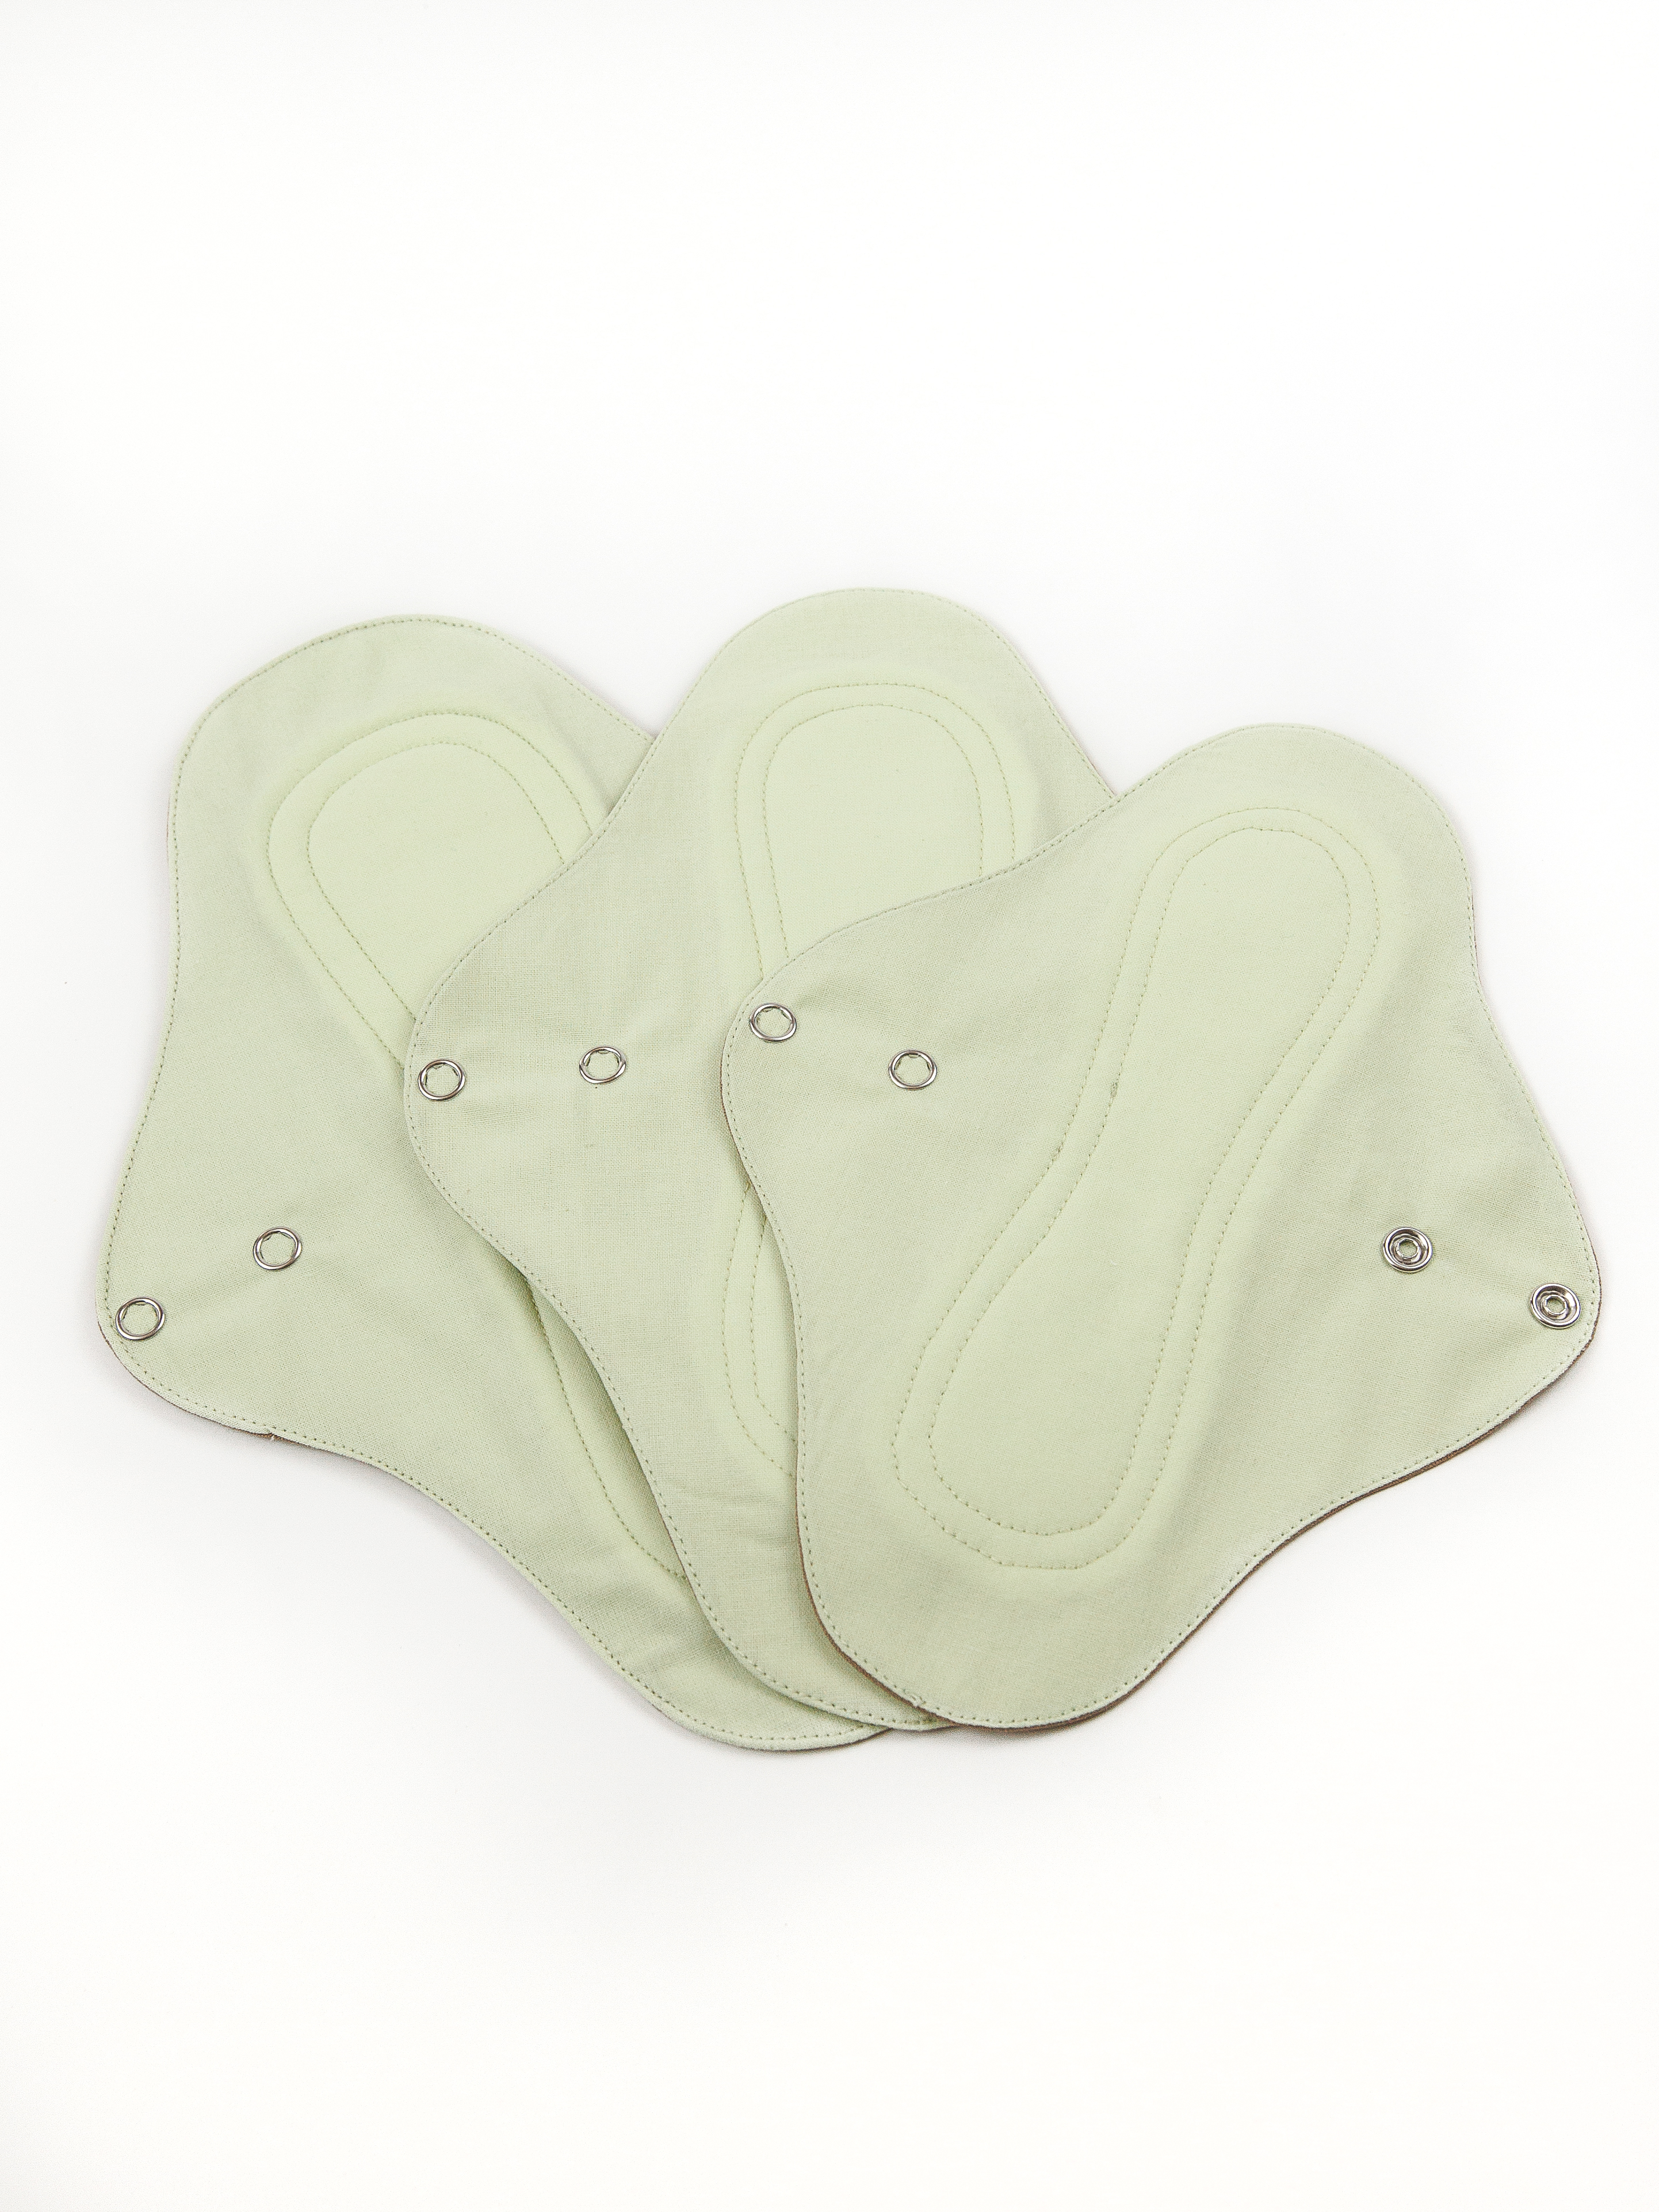 Прокладки Cycle Recycle для менструации многоразовые зеленый цвет 3 шт многоразовые прокладки mum s era f36995 флис комплект 5 шт